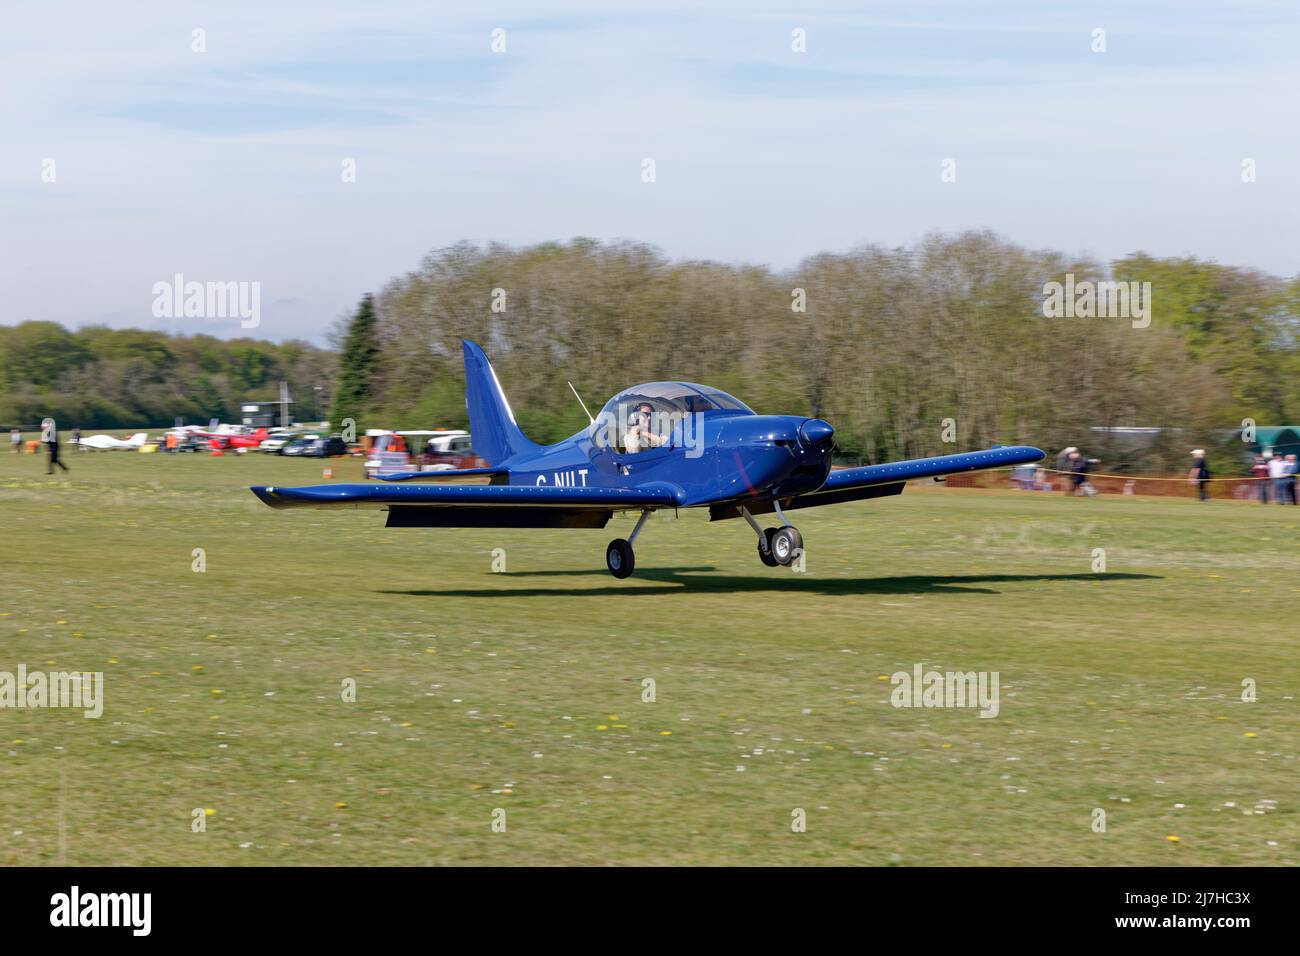 Das smarte blaue Eurostar EV-97-Ultraleichtflugzeug G-NILT kommt auf dem Flugplatz Popham in Hampshire England an, um an der jährlichen Einflugmöglichkeit für Ultraleichtflugzeuge teilzunehmen Stockfoto